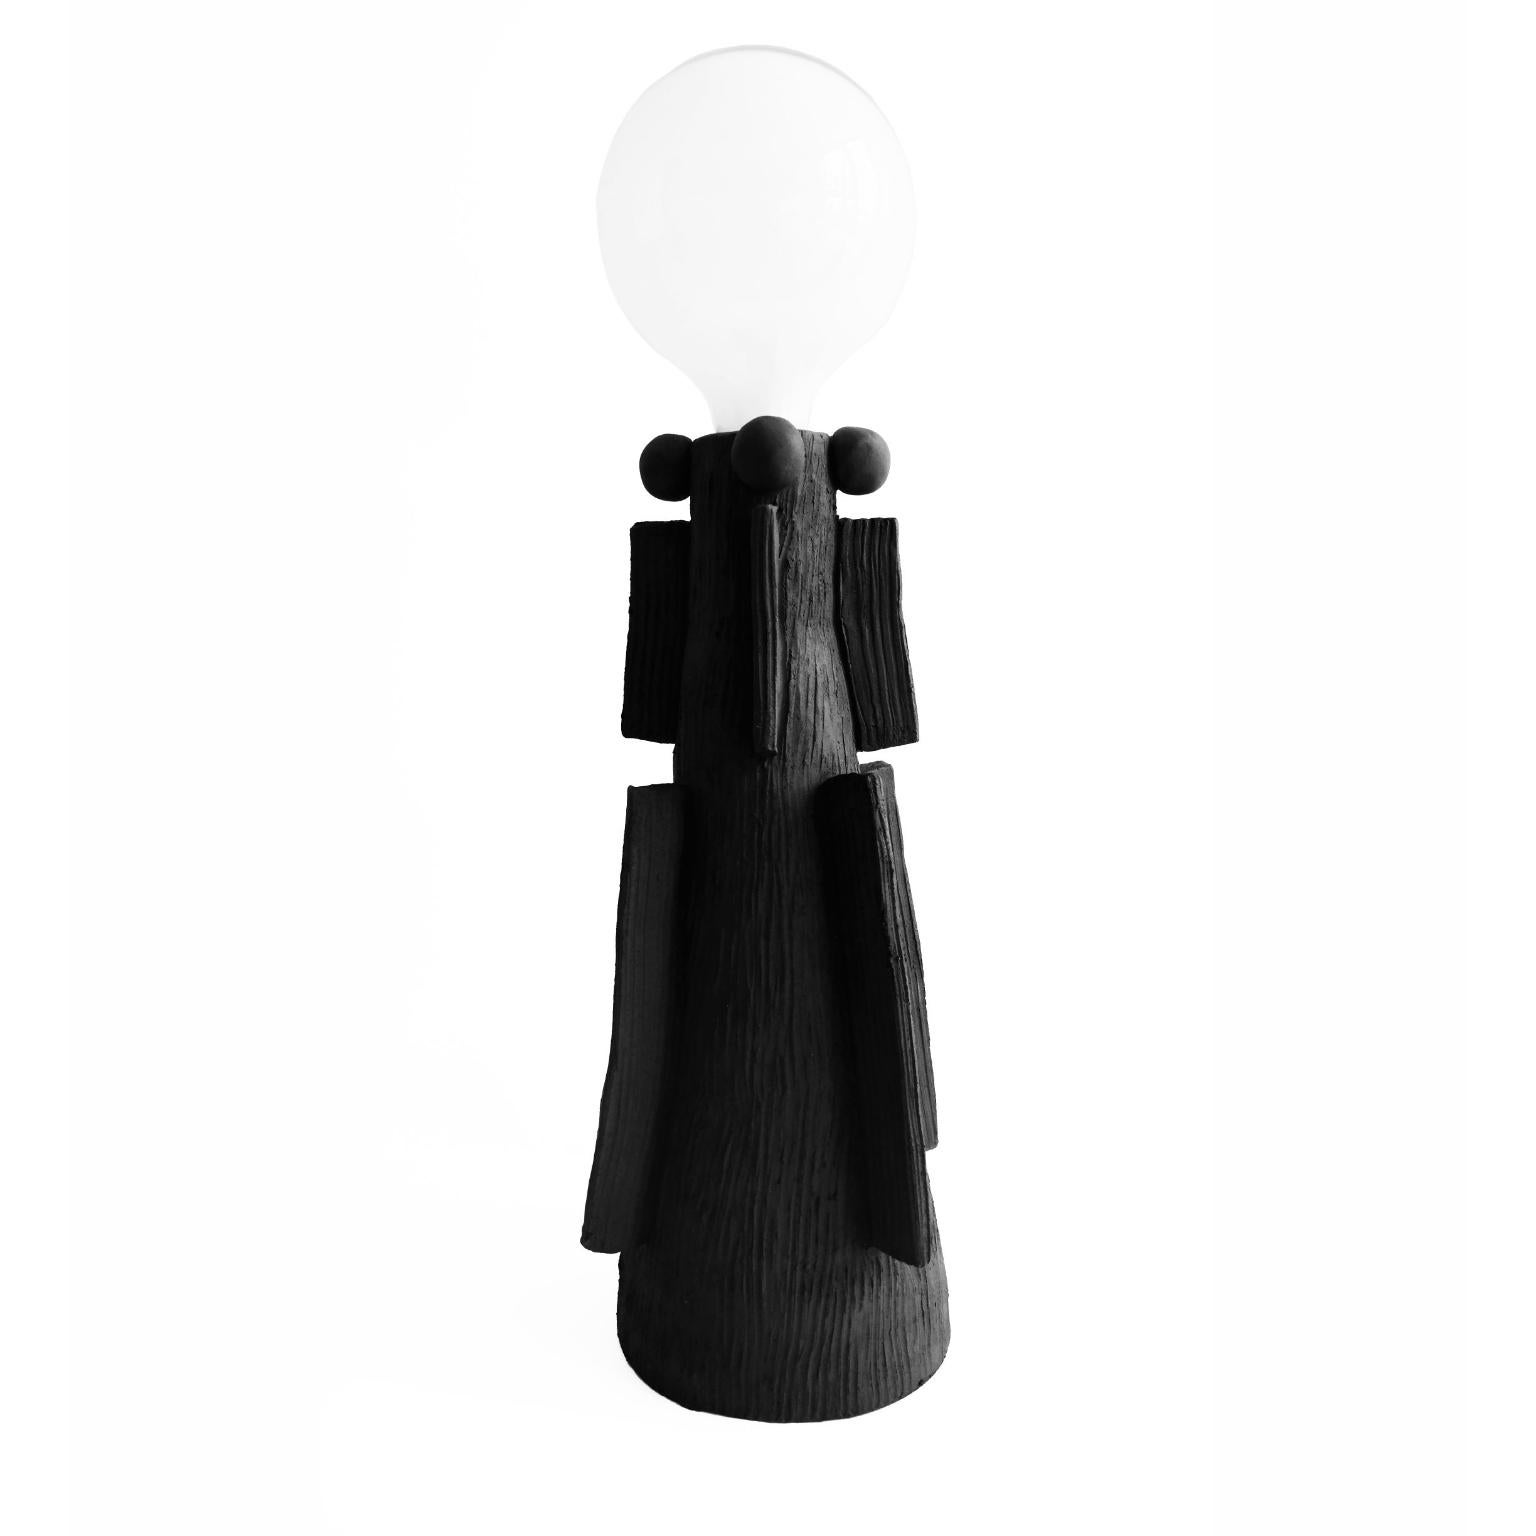 Handsculped Izzy lamp tischlampe von Ia Kutateladze
Abmessungen: B 18 x H 34 cm
MATERIALIEN: Lehm, Keramik

Handgefertigte Keramiklampe mit minimalistischer Form und rauer, strukturierter Oberfläche.

IAAI / Ia Kutateladze ist ein georgischer